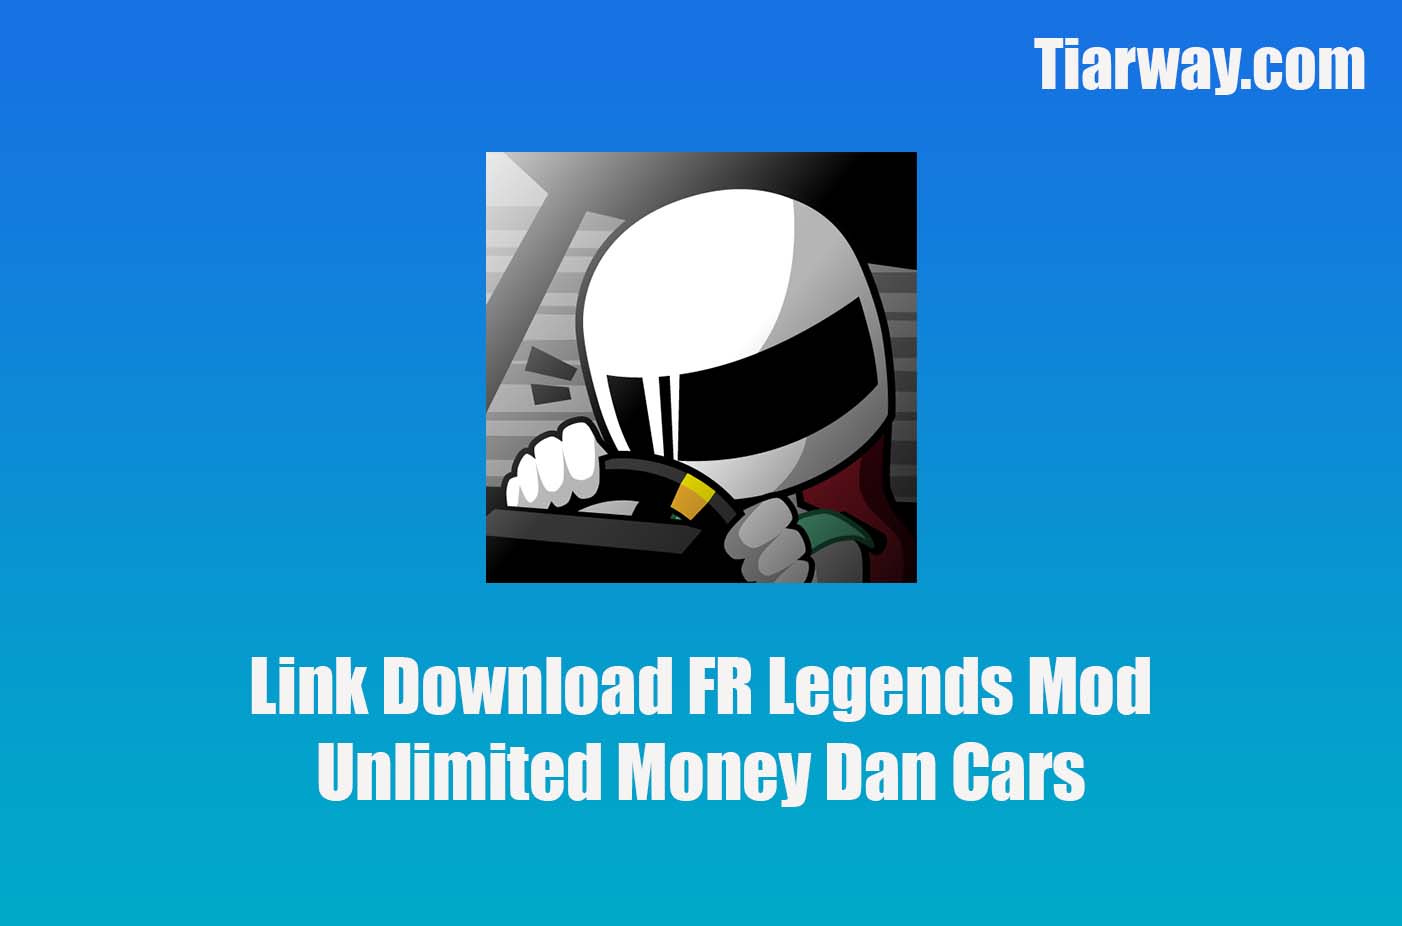 Link Download FR Legends Mod Unlimited Money Dan Cars